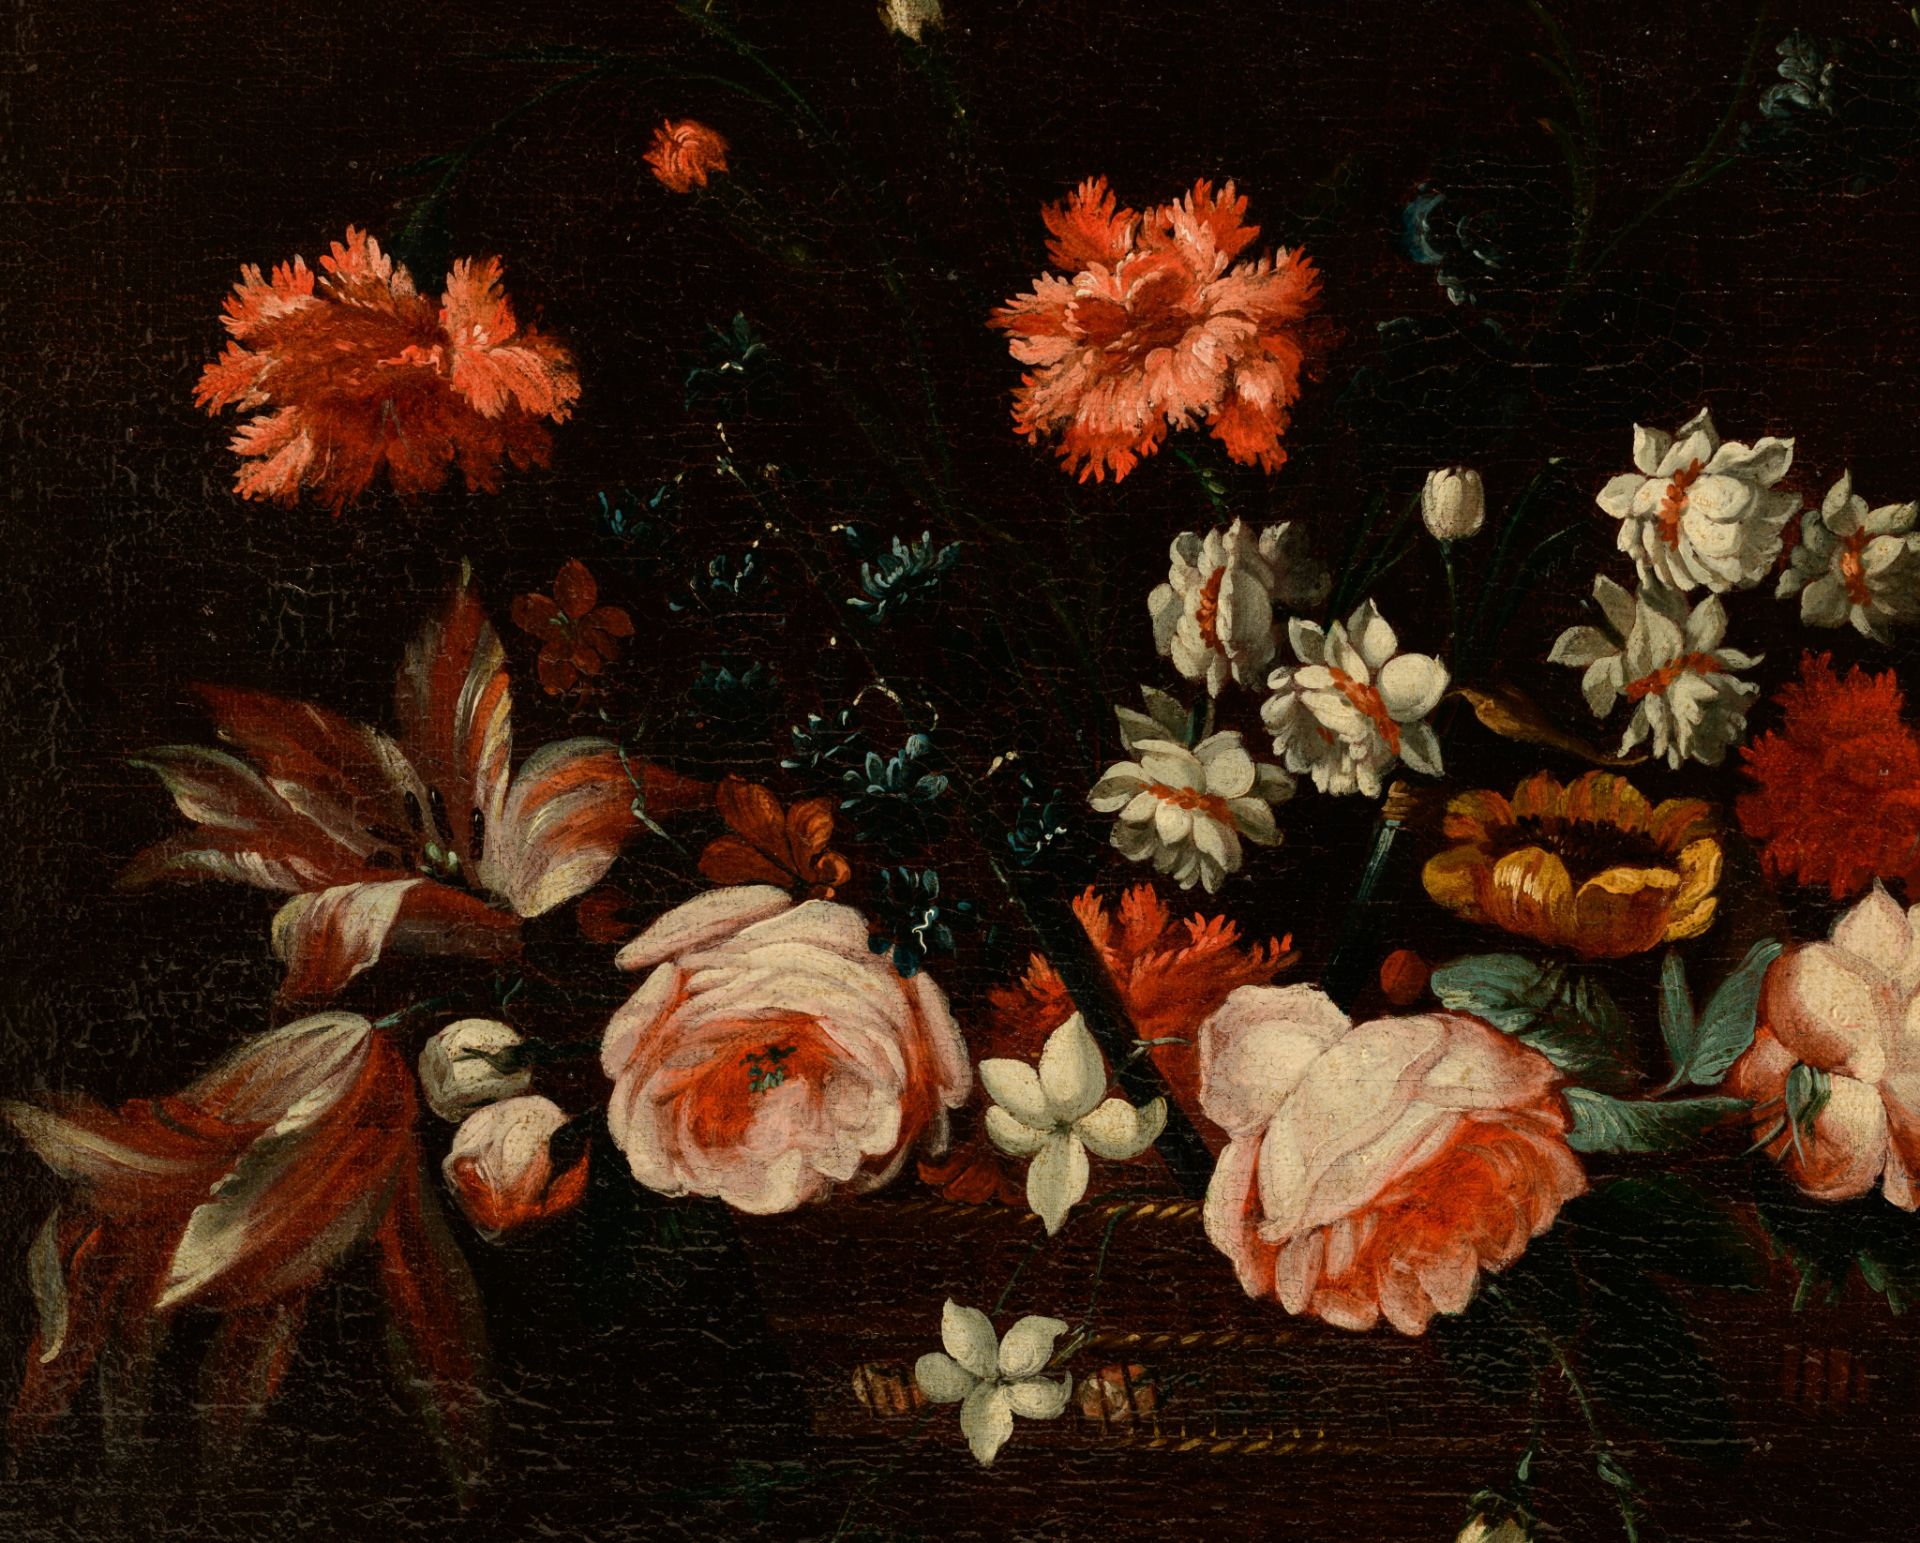 Adriaen Coorte (c. 1660-1723), flower still life, 1700, oil on canvas, 60 x 66 cm - Bild 5 aus 6